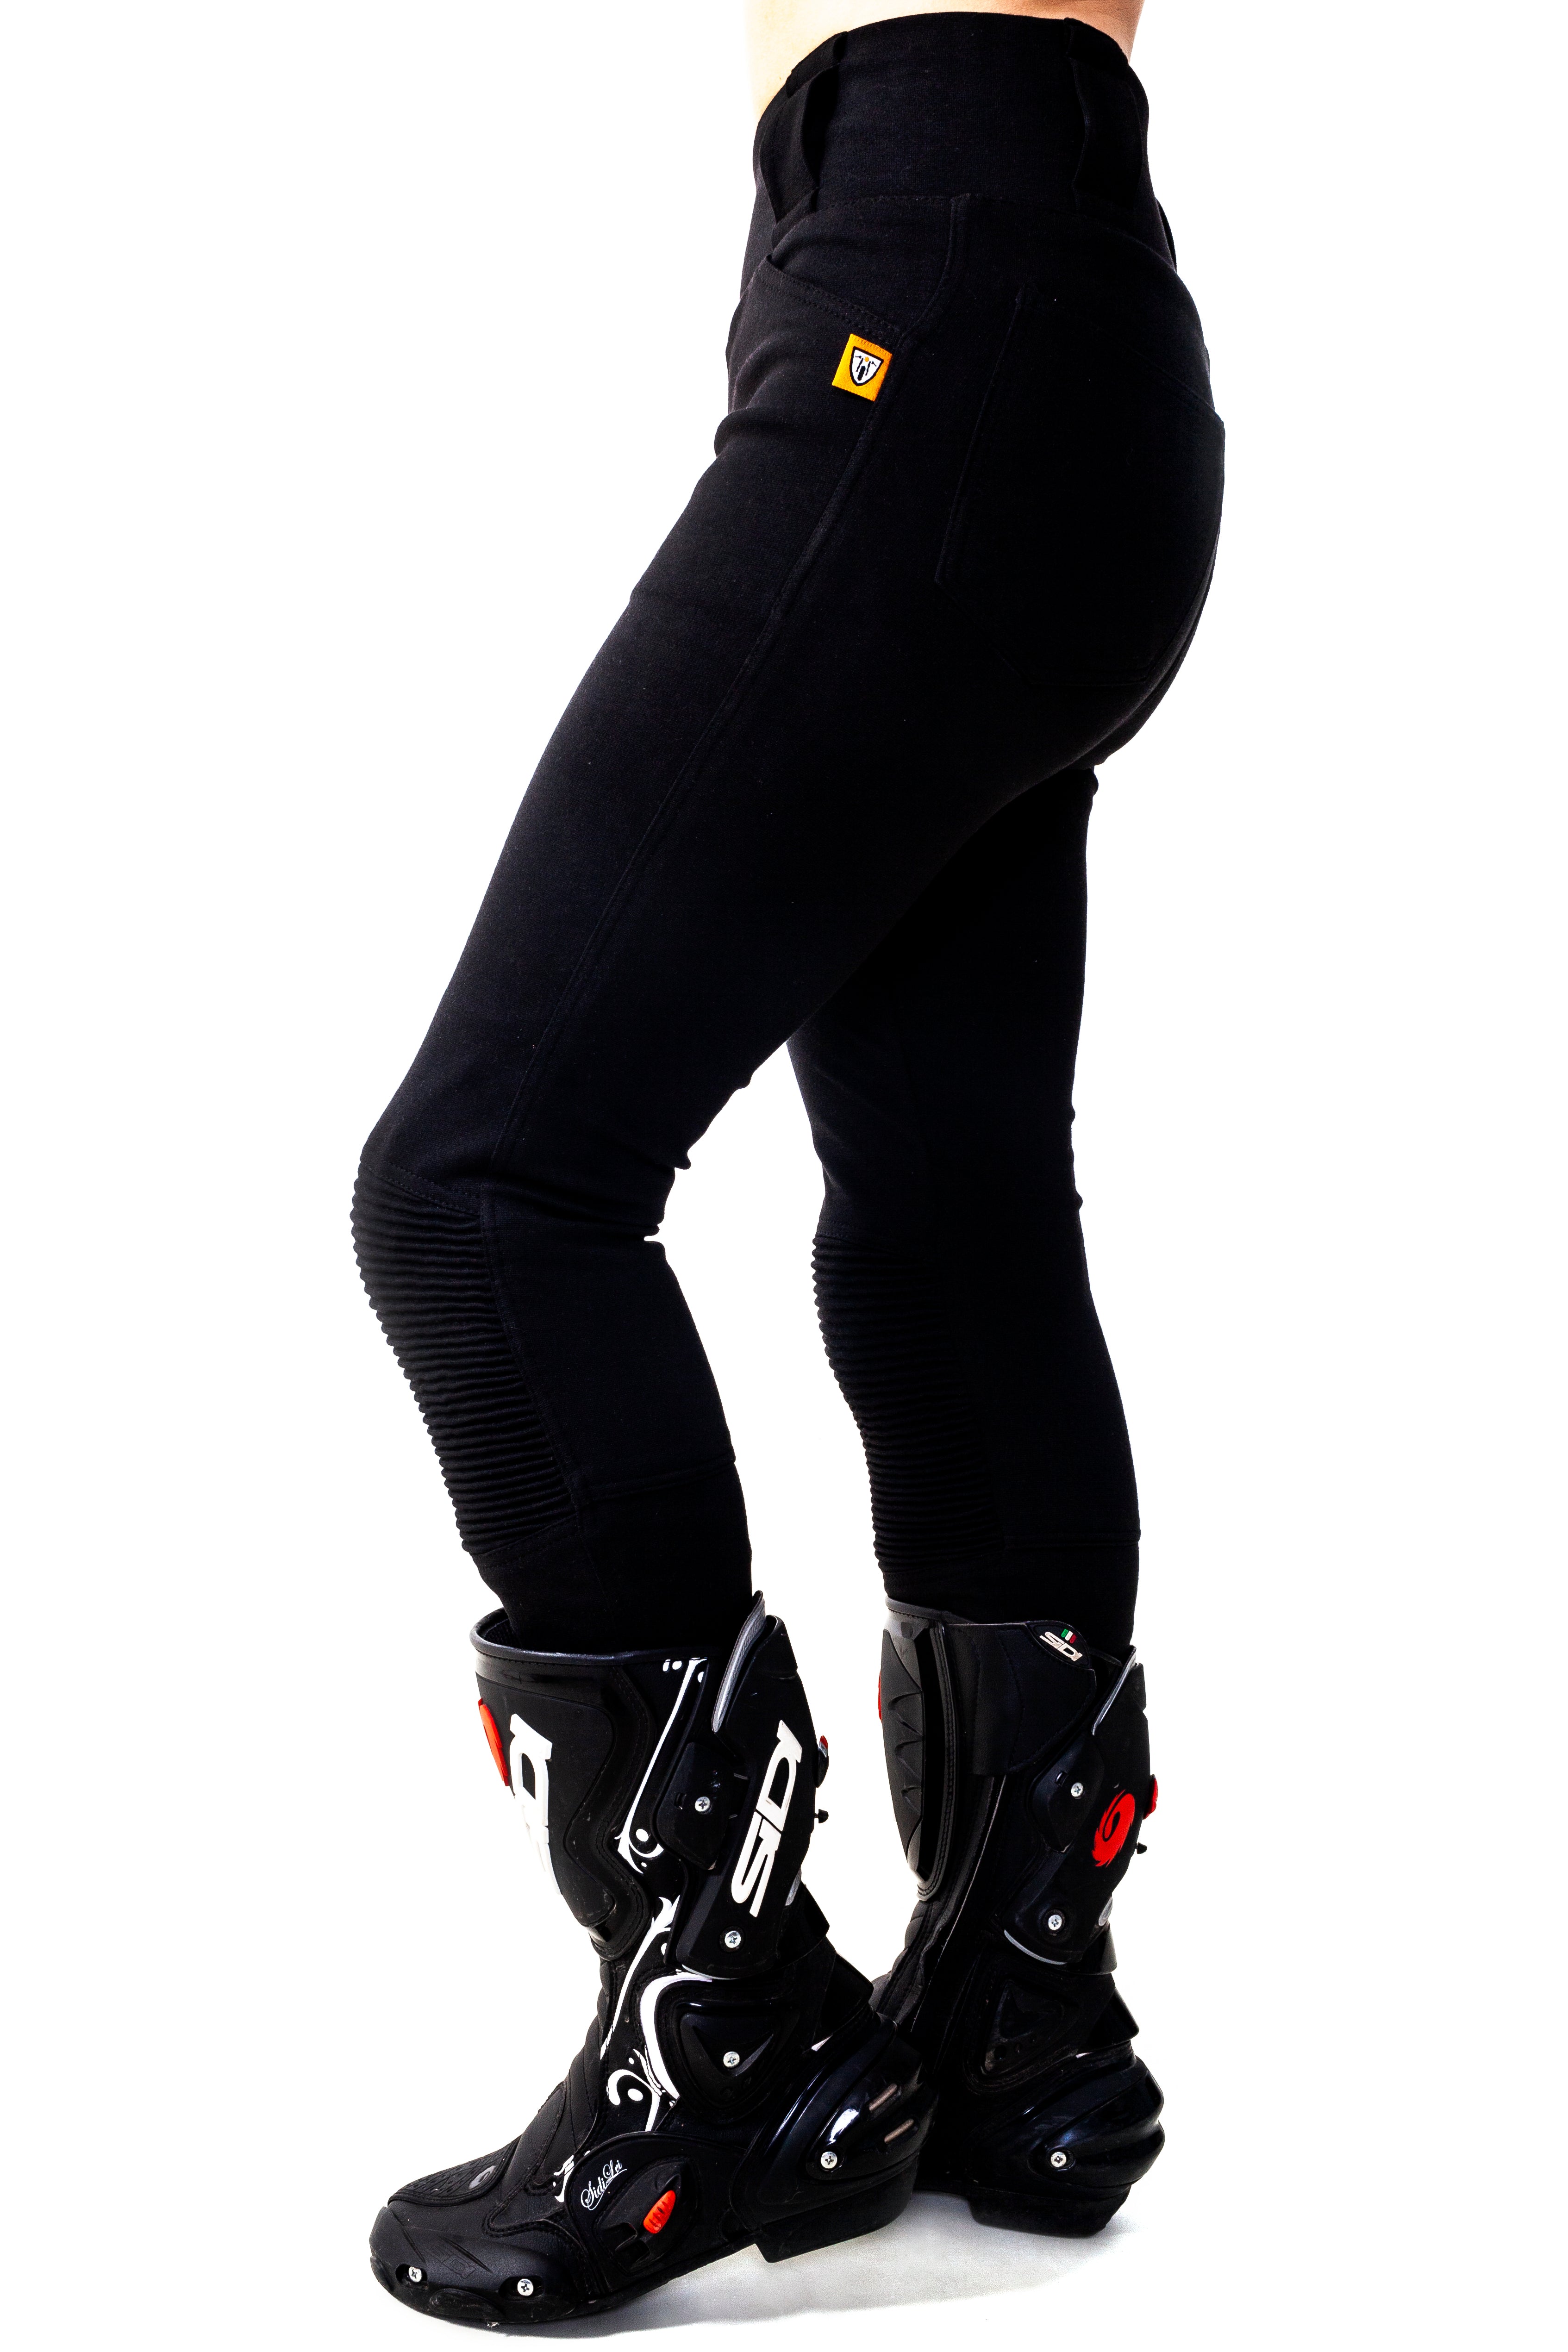 Hue Leggings Moto Mesh Active Leggings XS, S, M, XL